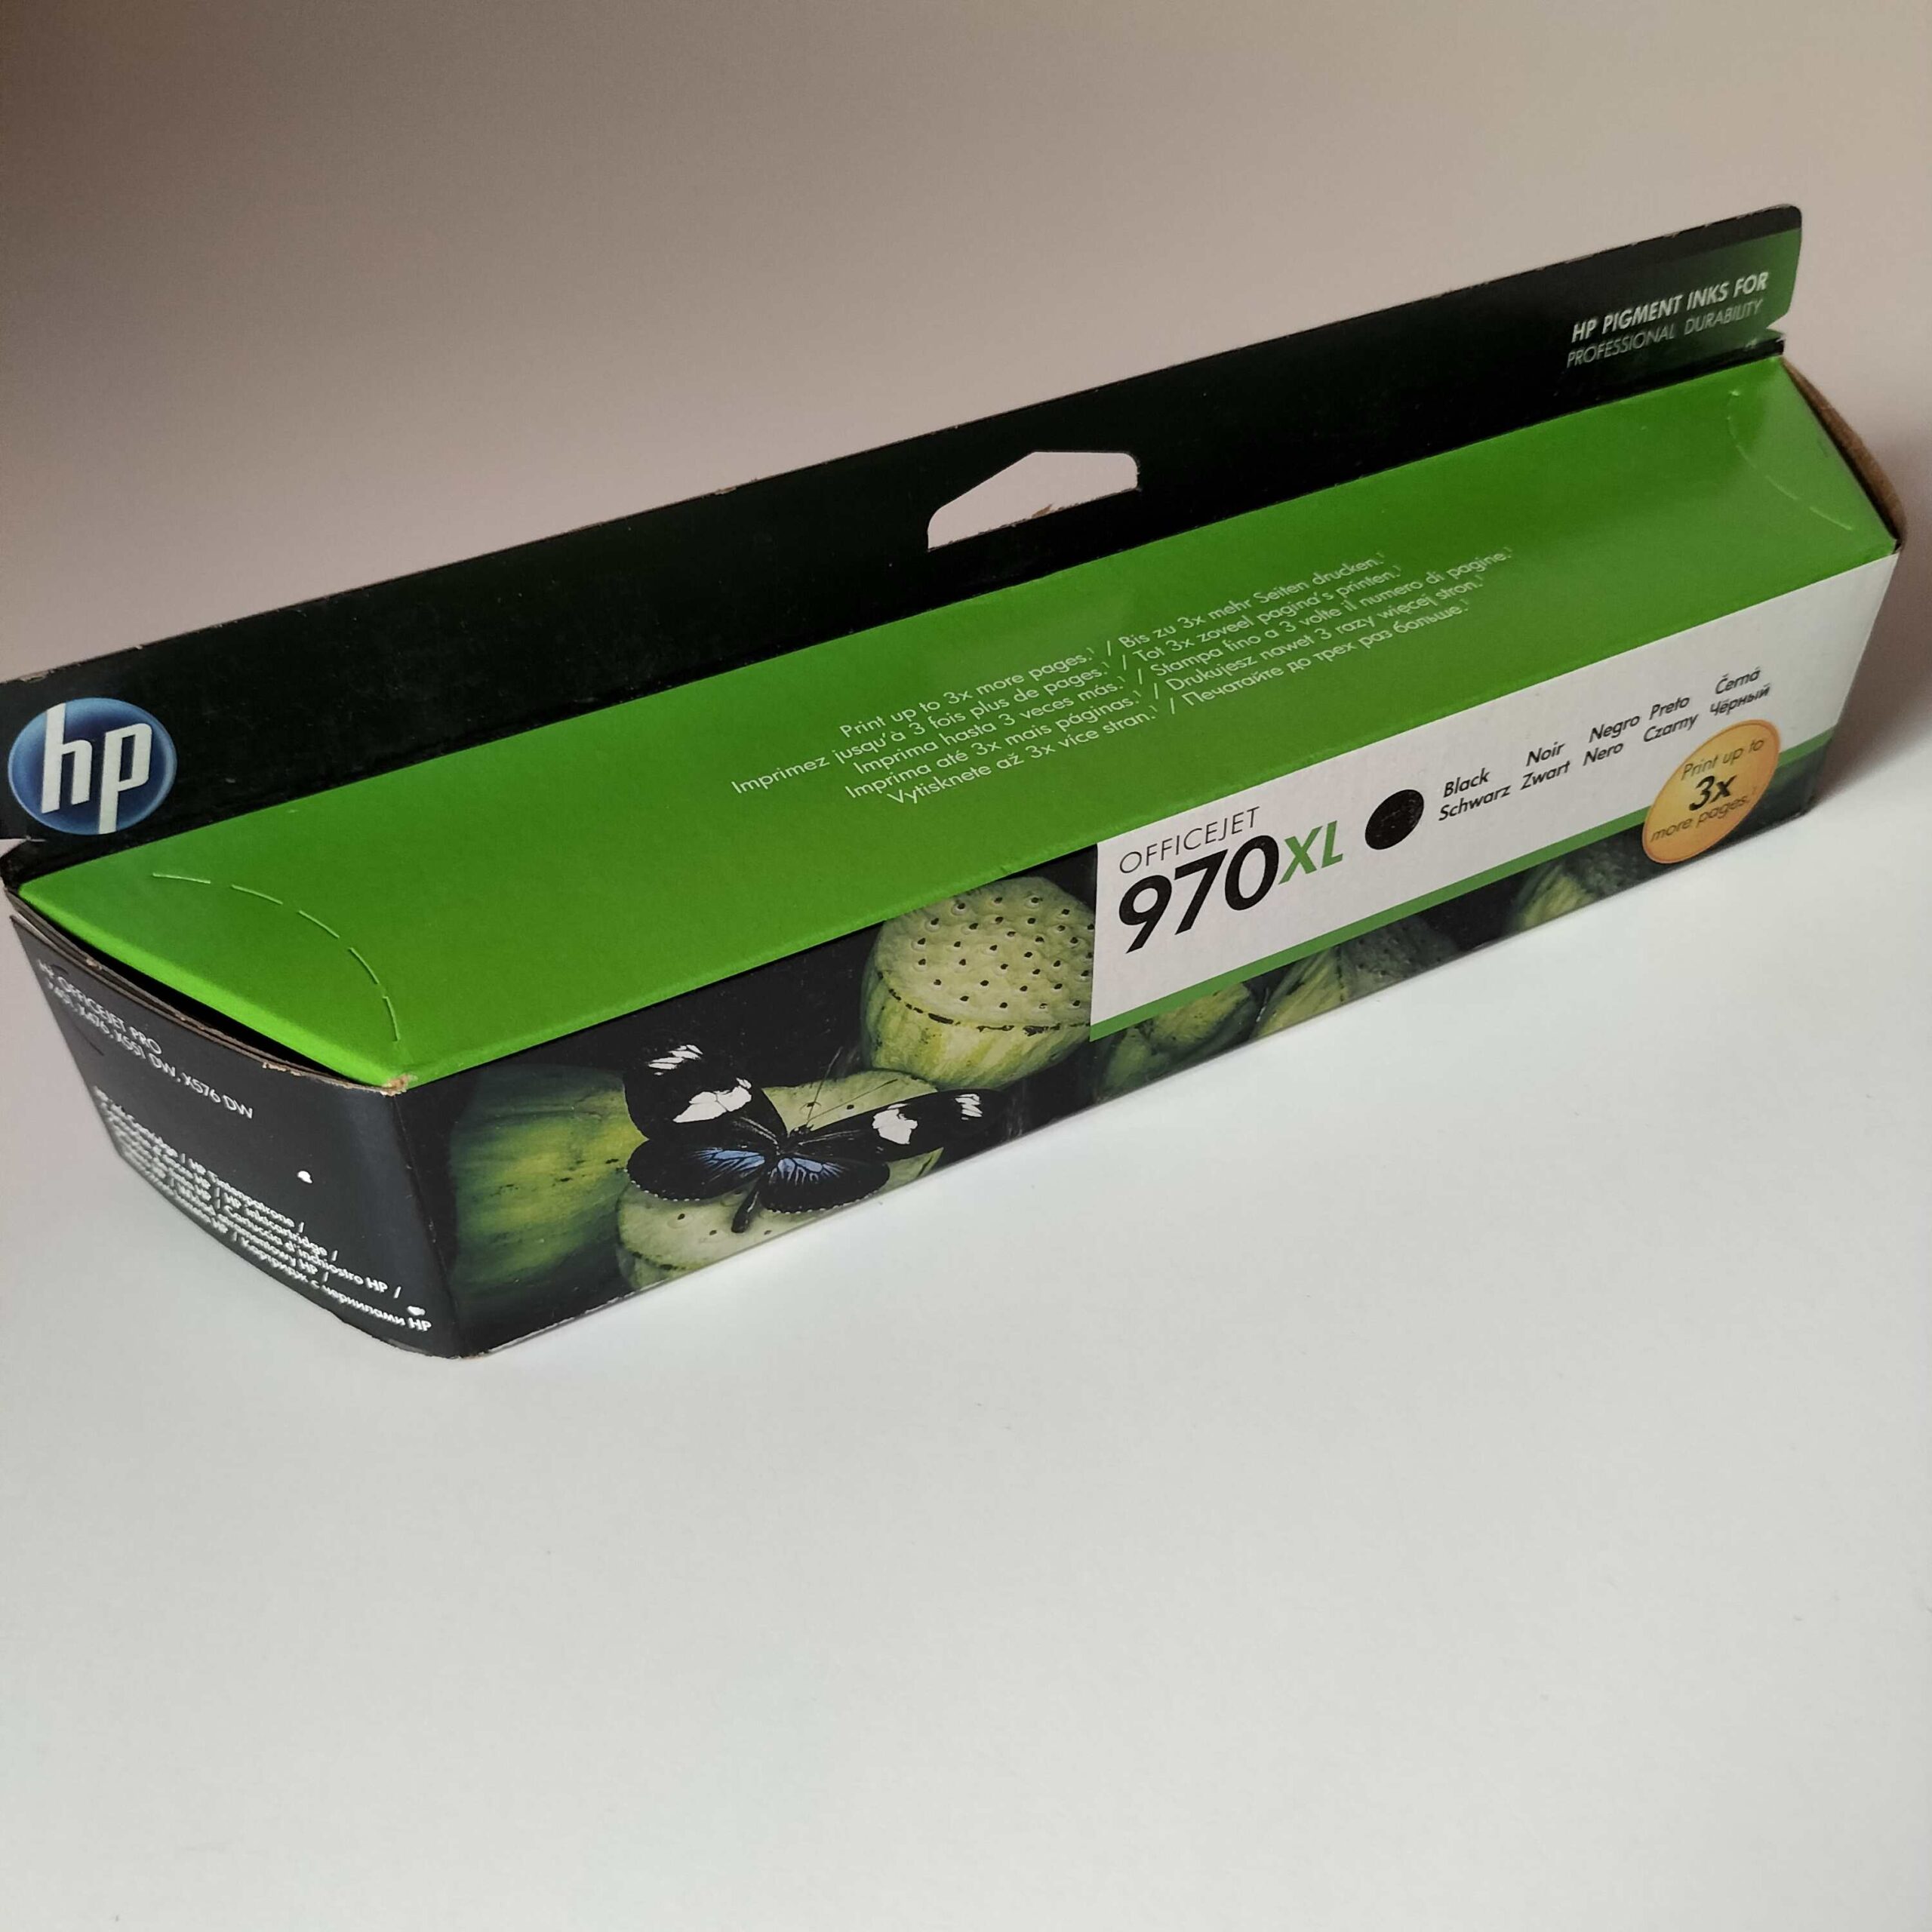 HP 970Xl CN625A grade A_compress21